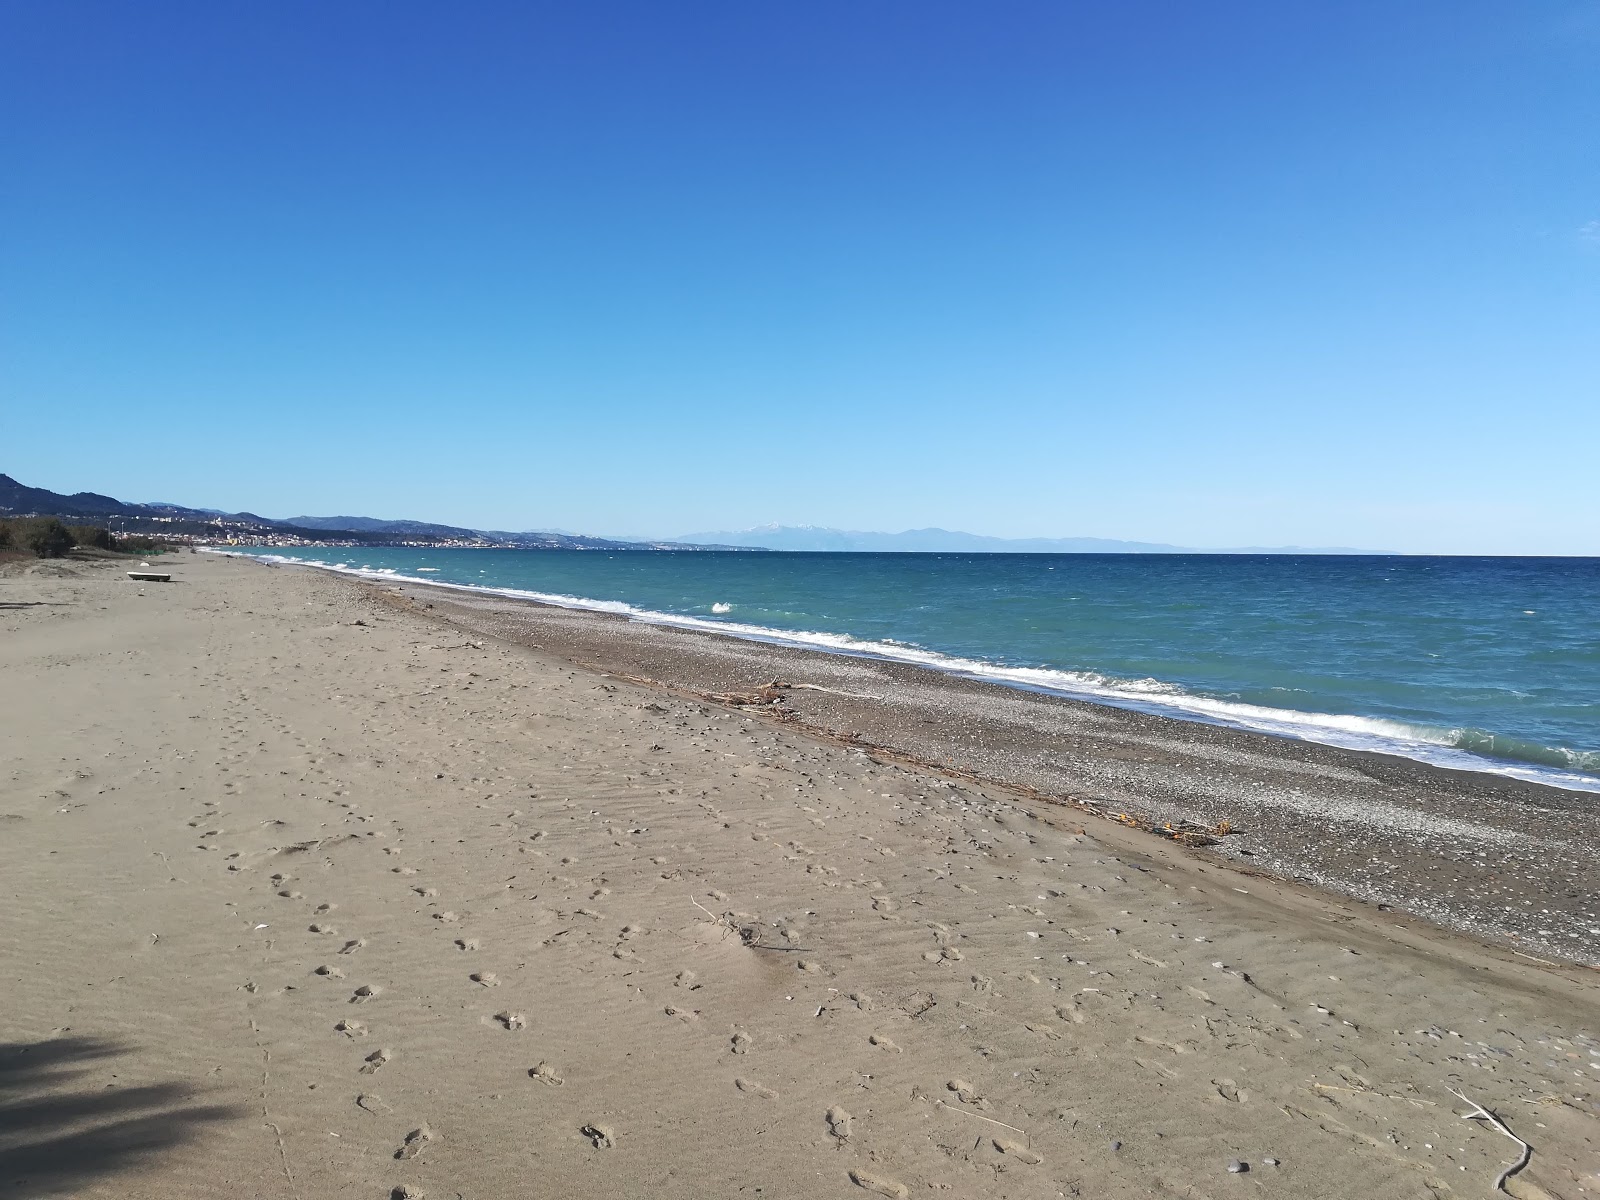 La Capannina beach'in fotoğrafı gri kum ve çakıl yüzey ile